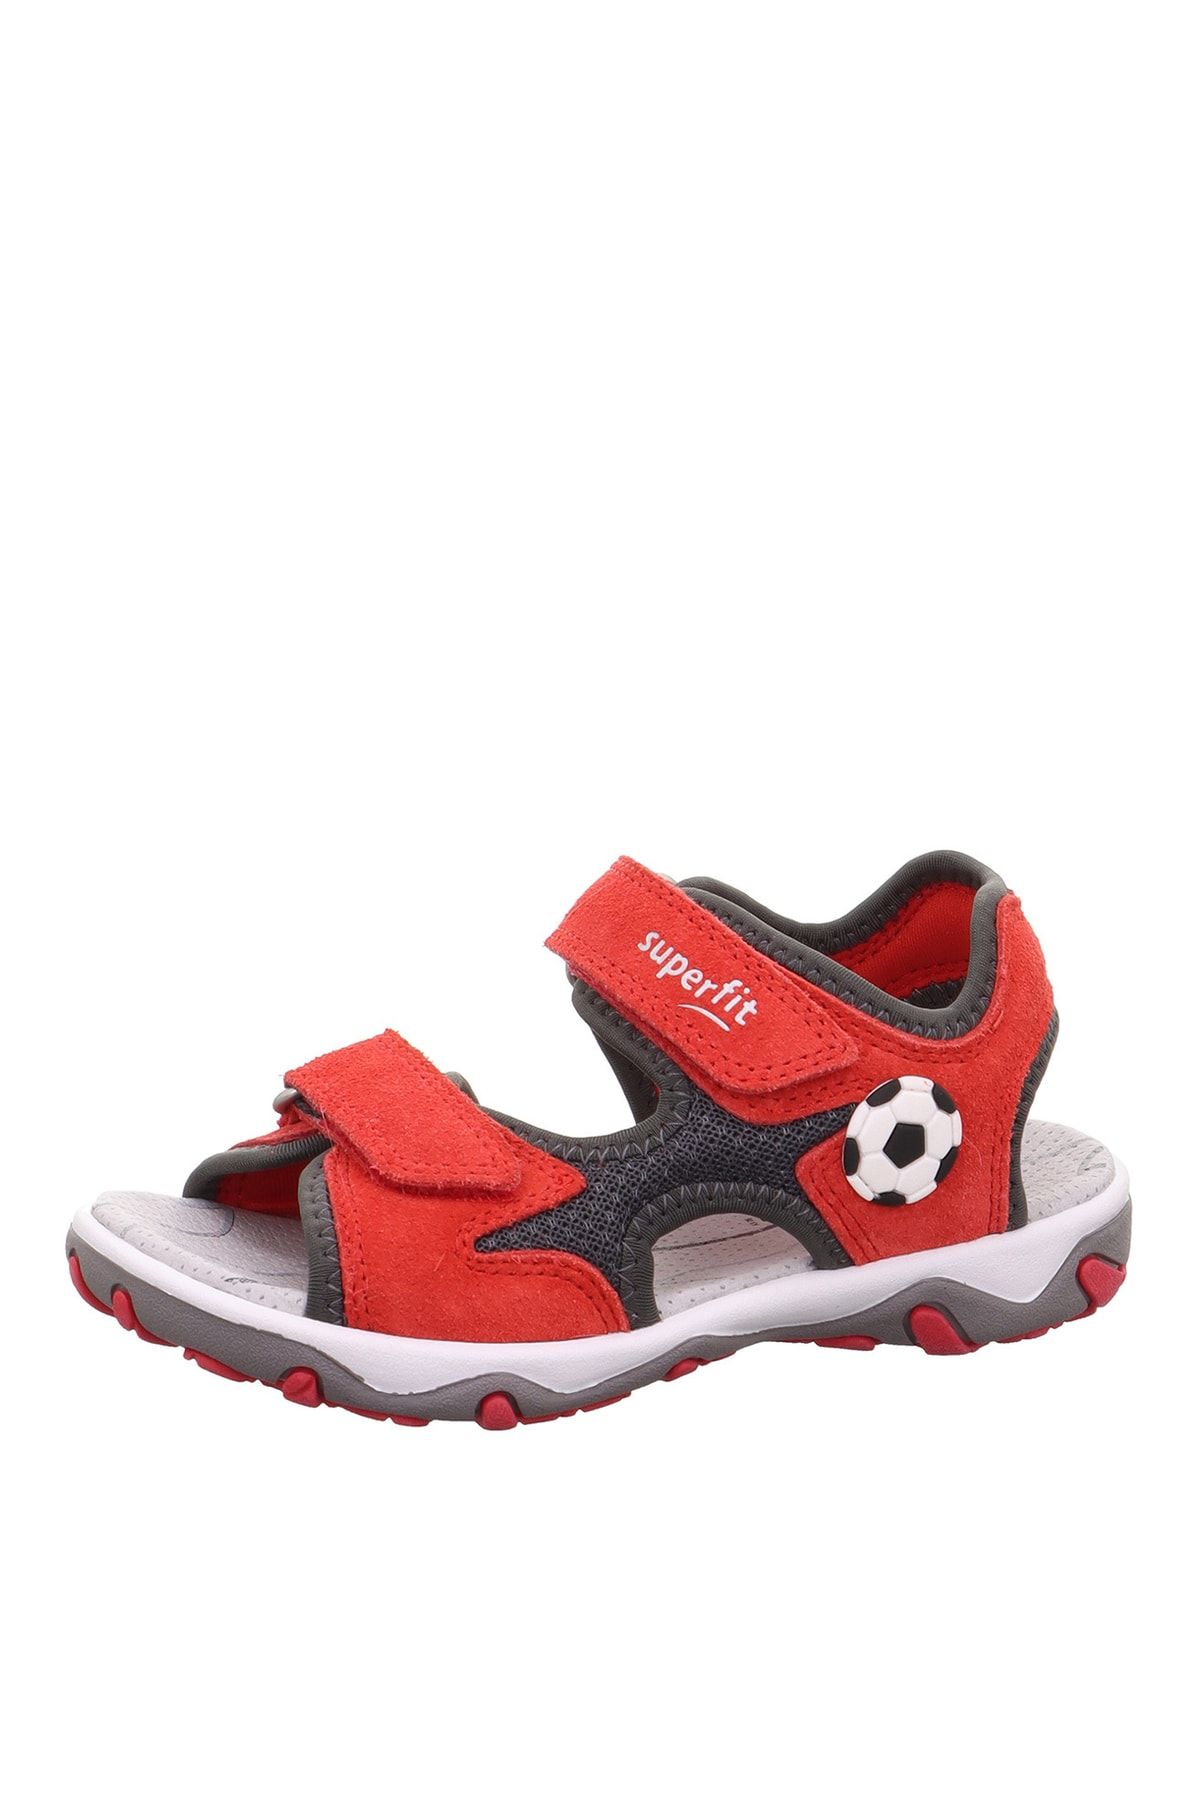 Superfit Kırmızı - Gri Erkek Çocuk Sandalet Mıke 3.0 1-009469-5000-2